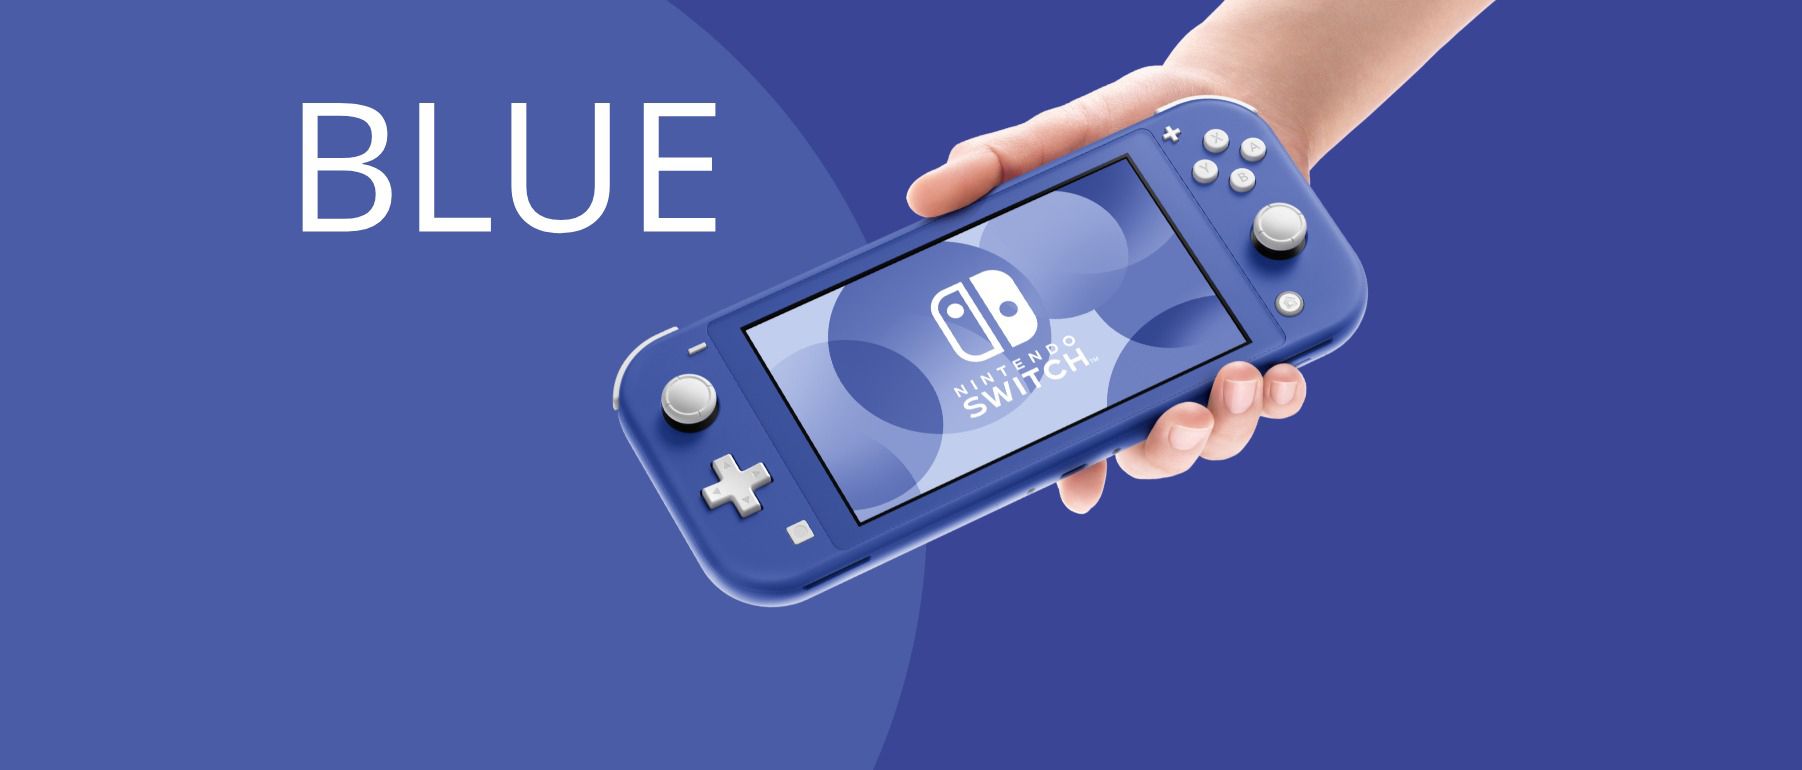 Sininen Nintendo Switch Lite julkaistaan Euroopassa 7. toukokuuta!